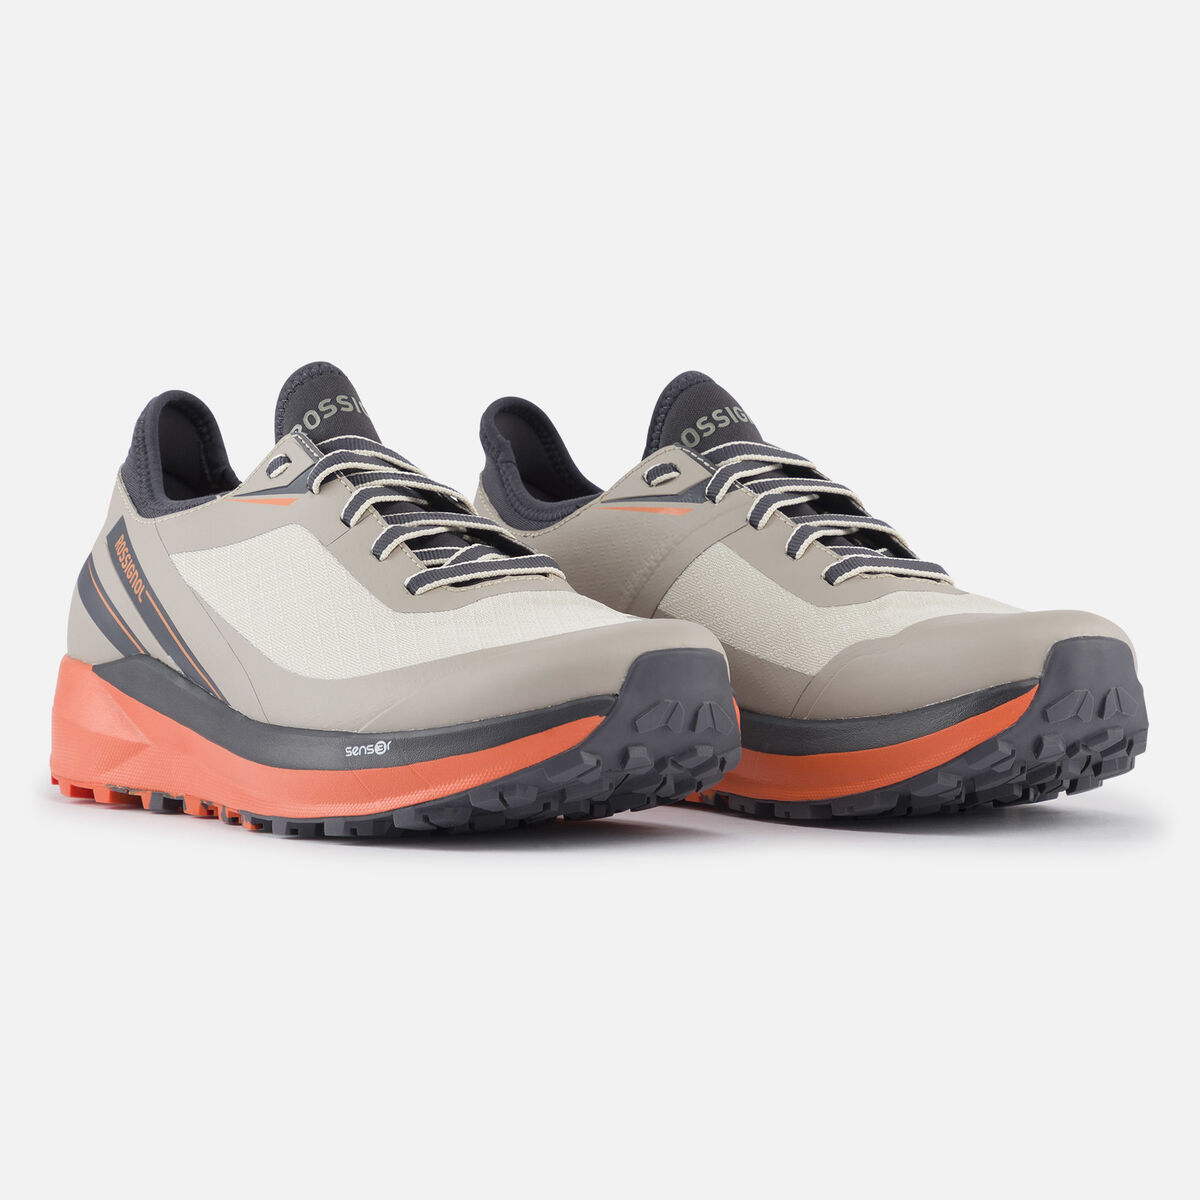 Rossignol Zapatillas impermeables Active outdoor de color caqui para mujer grey